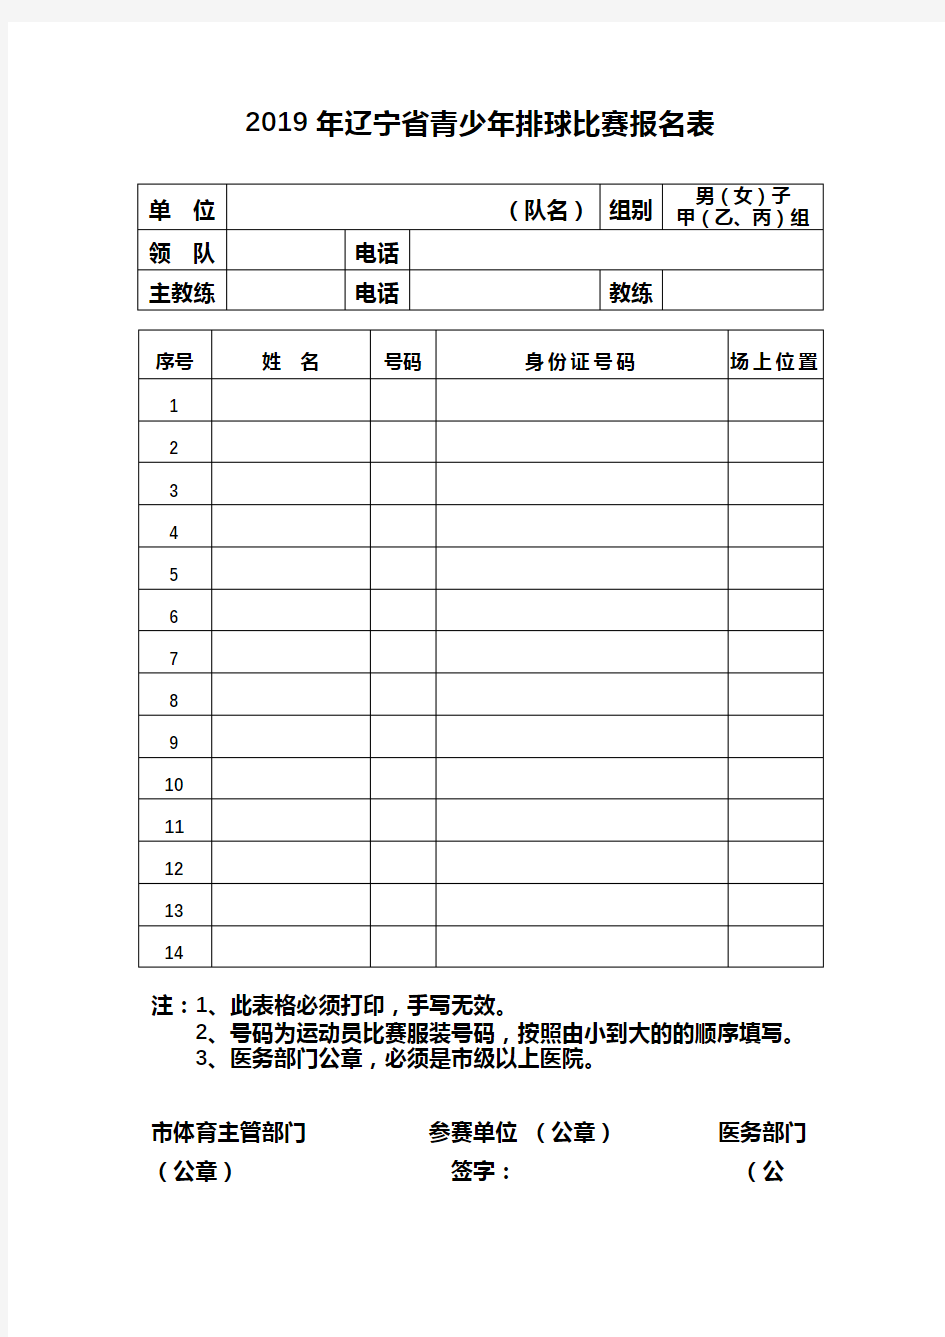 2019年辽宁省青少年排球比赛报名表【模板】